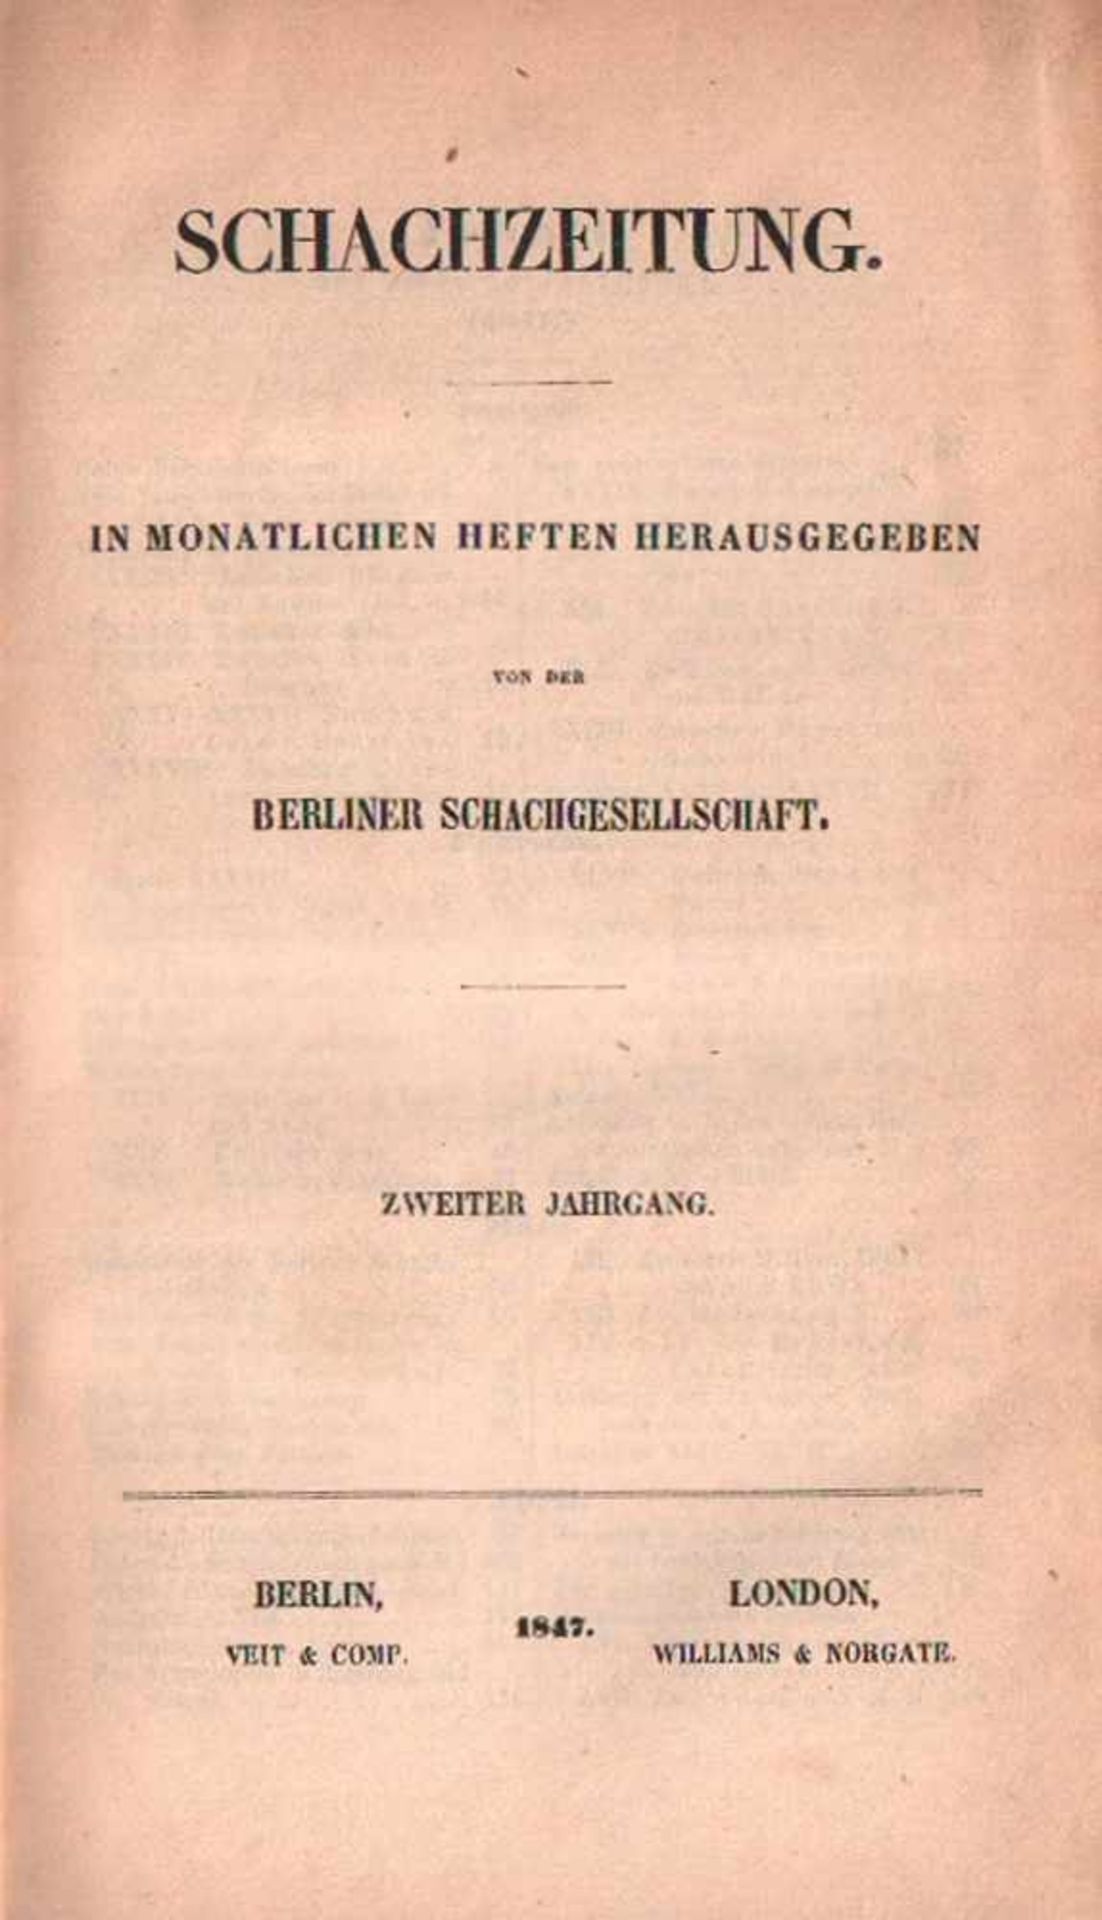 (Deutsche) Schachzeitung.Herausgegeben von der Berliner Schachgesellschaft. 2. Jahrgang 1847.